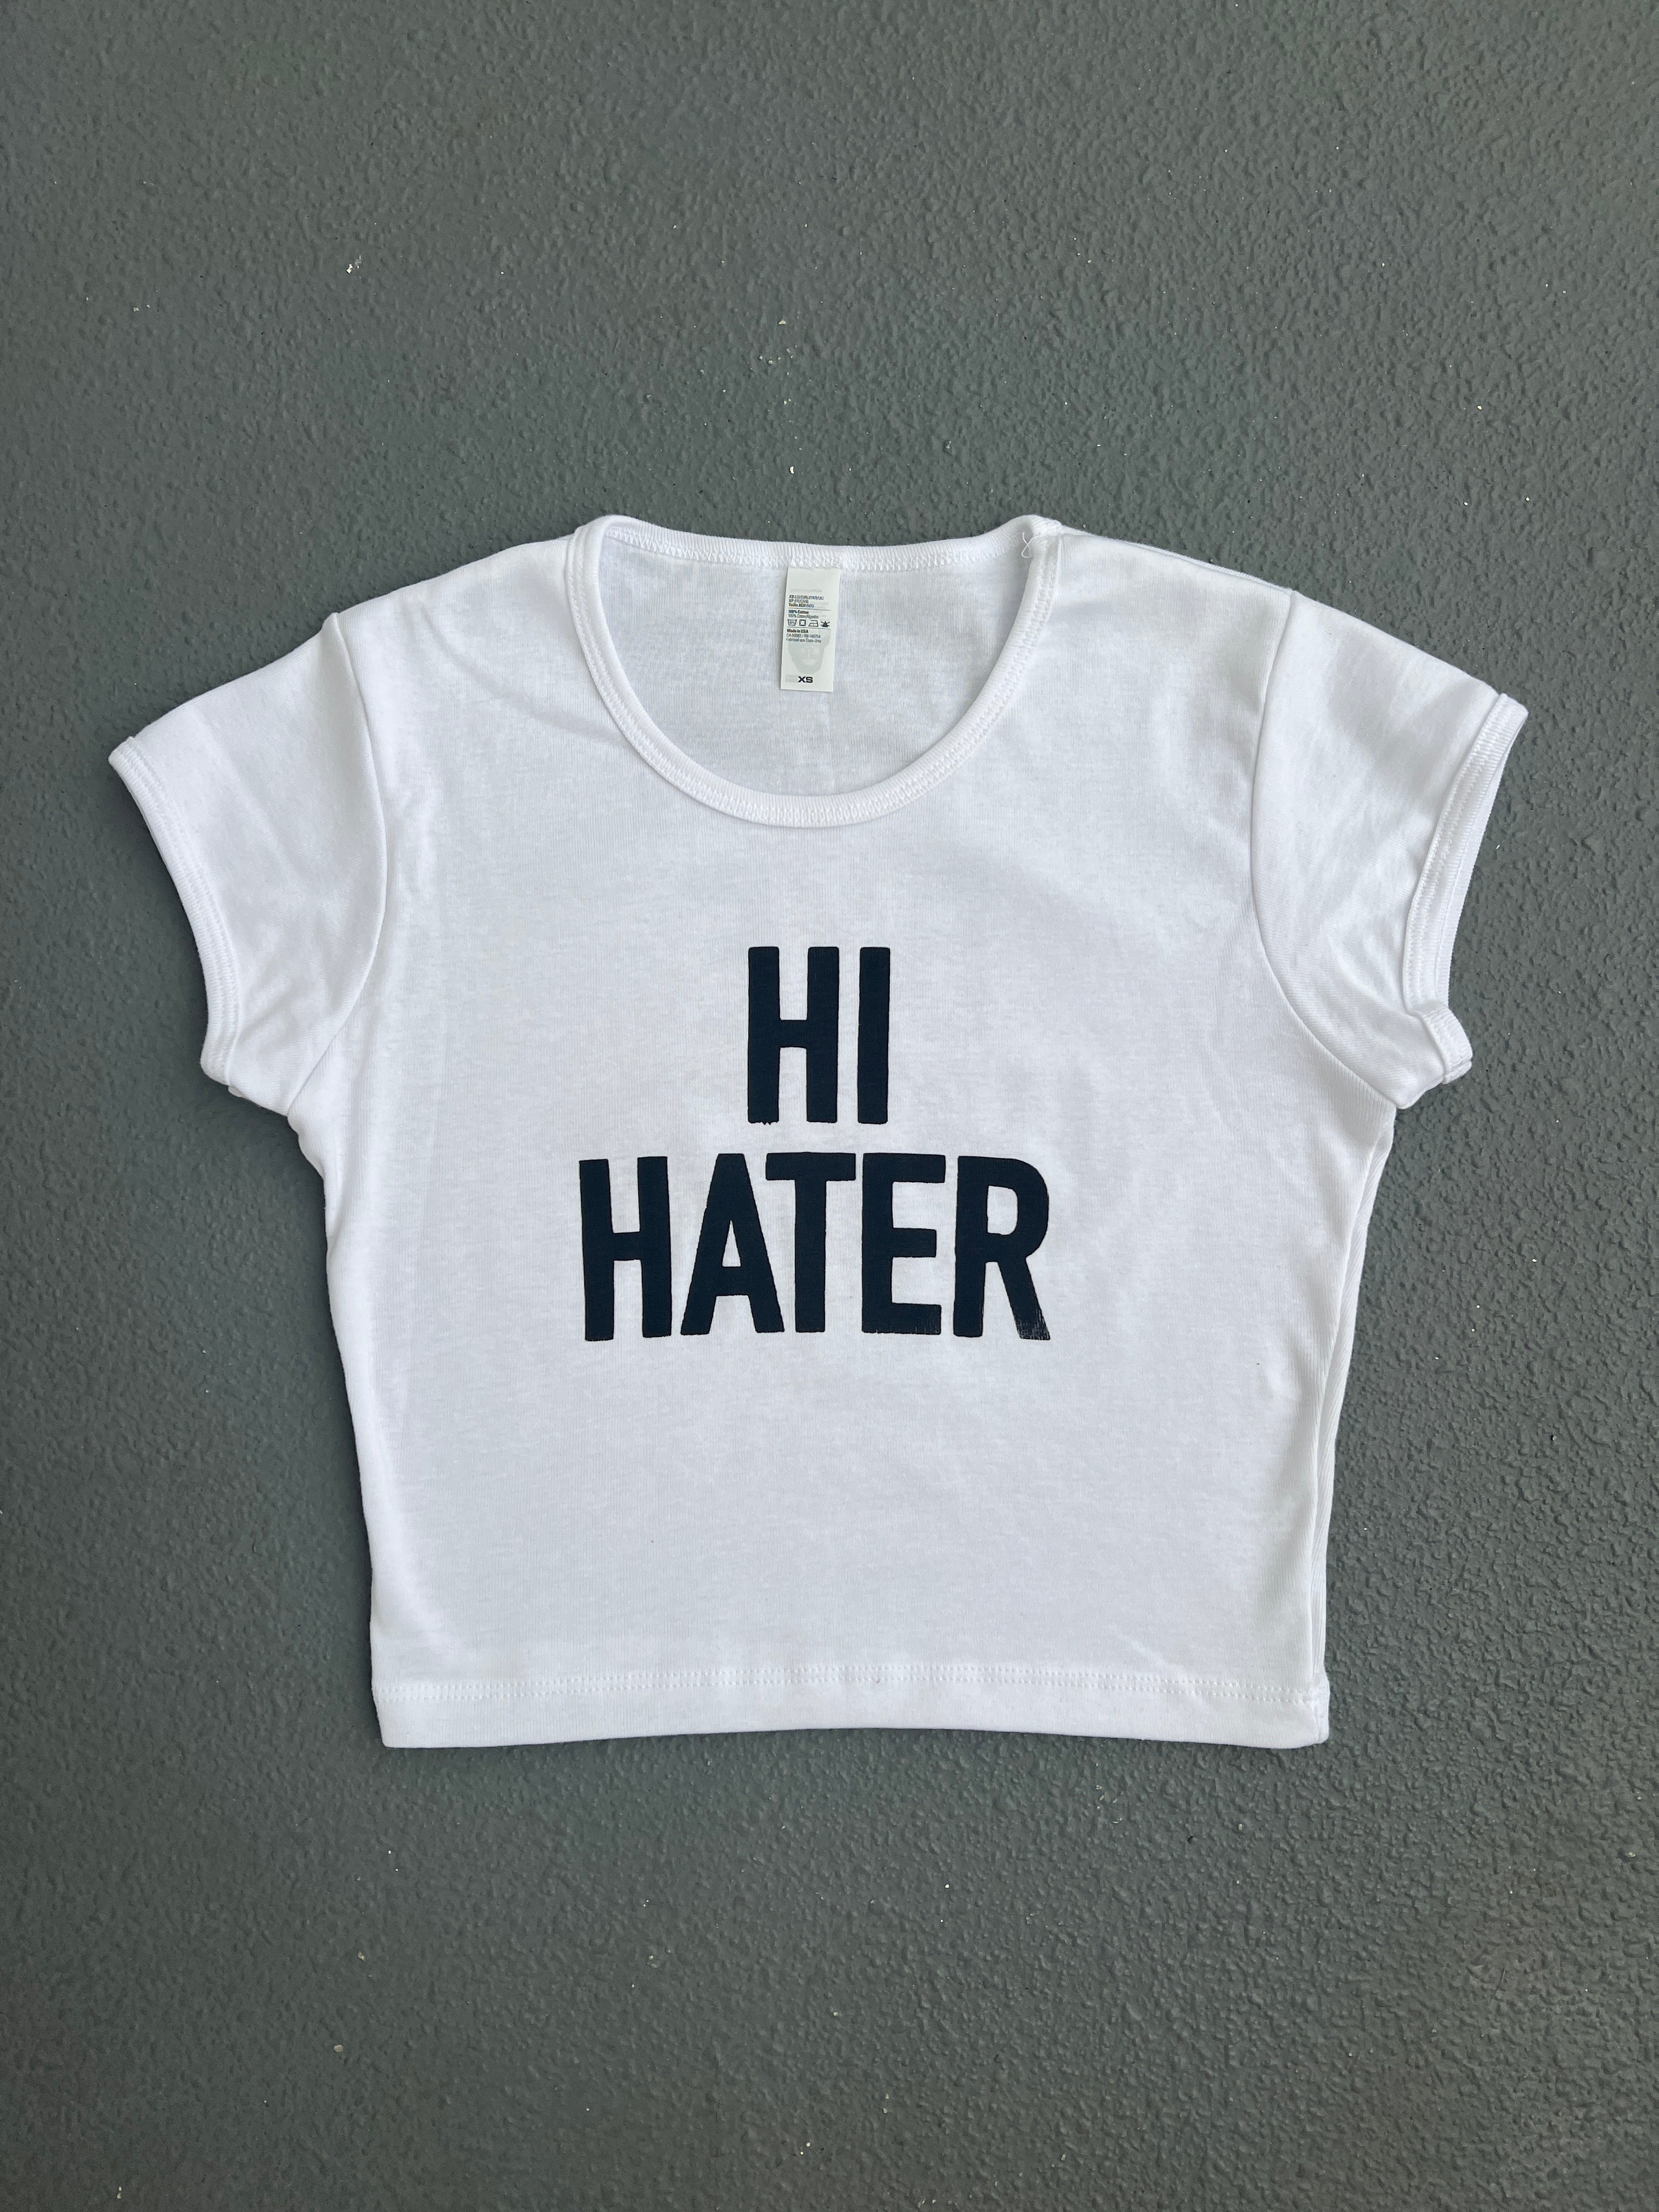 HI HATER! Baby Tee